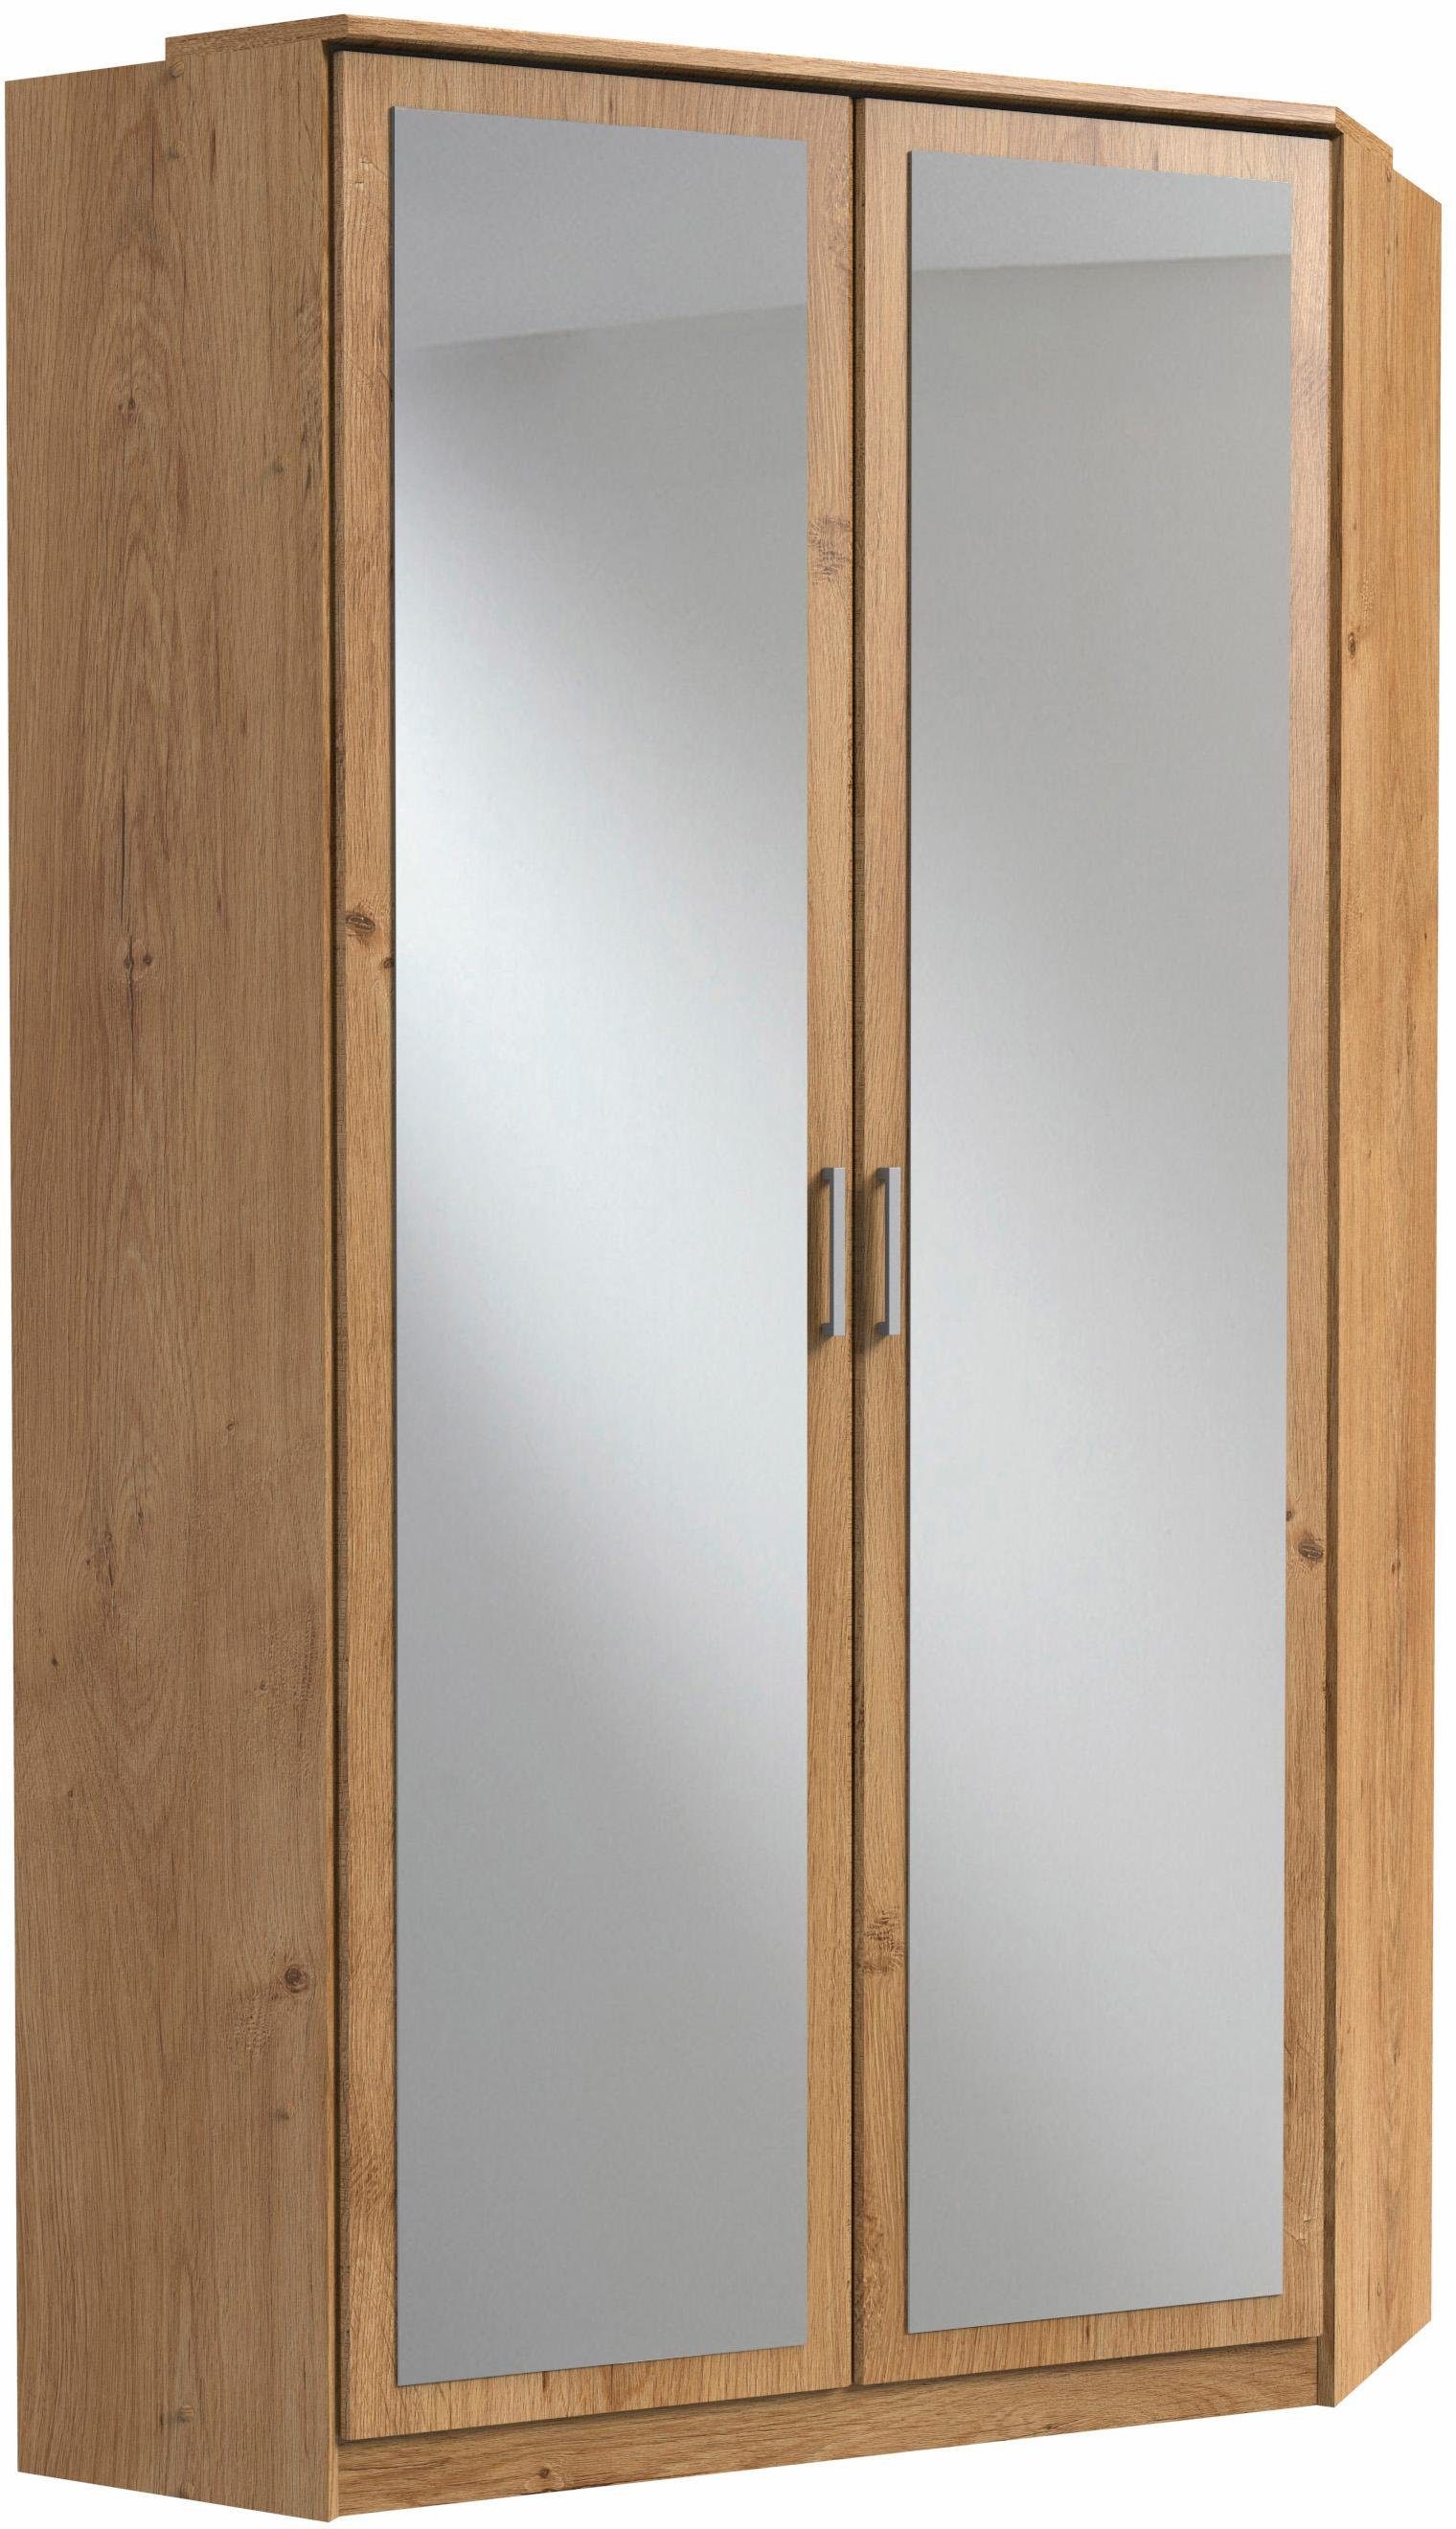 Wimex Eckkleiderschrank Click mit 2 plankeneichefarben Spiegeltüren